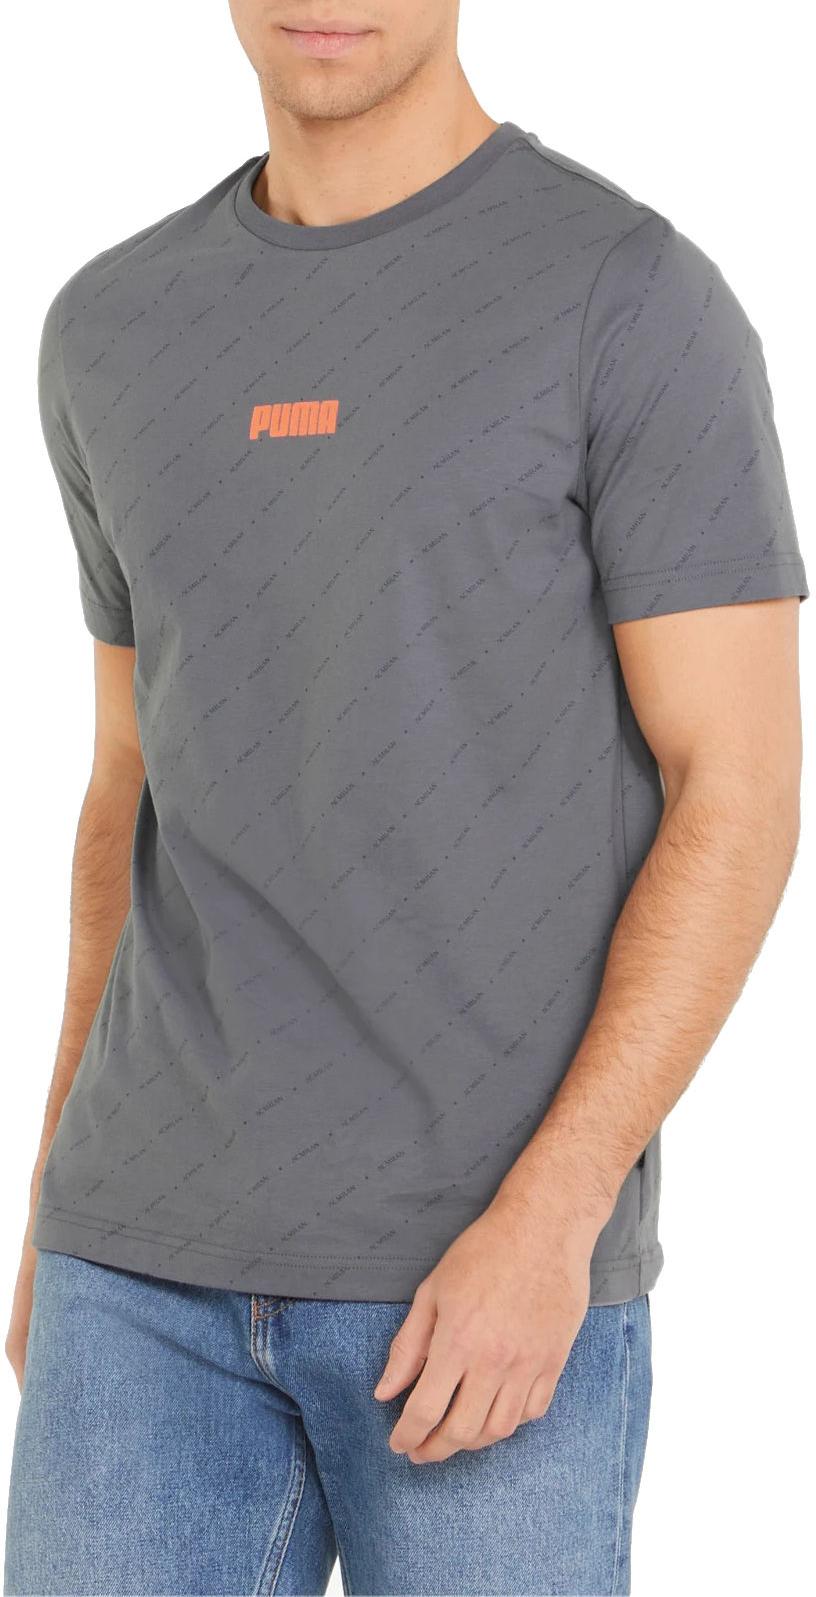 Camiseta Puma ACM FtblLegacy Tee